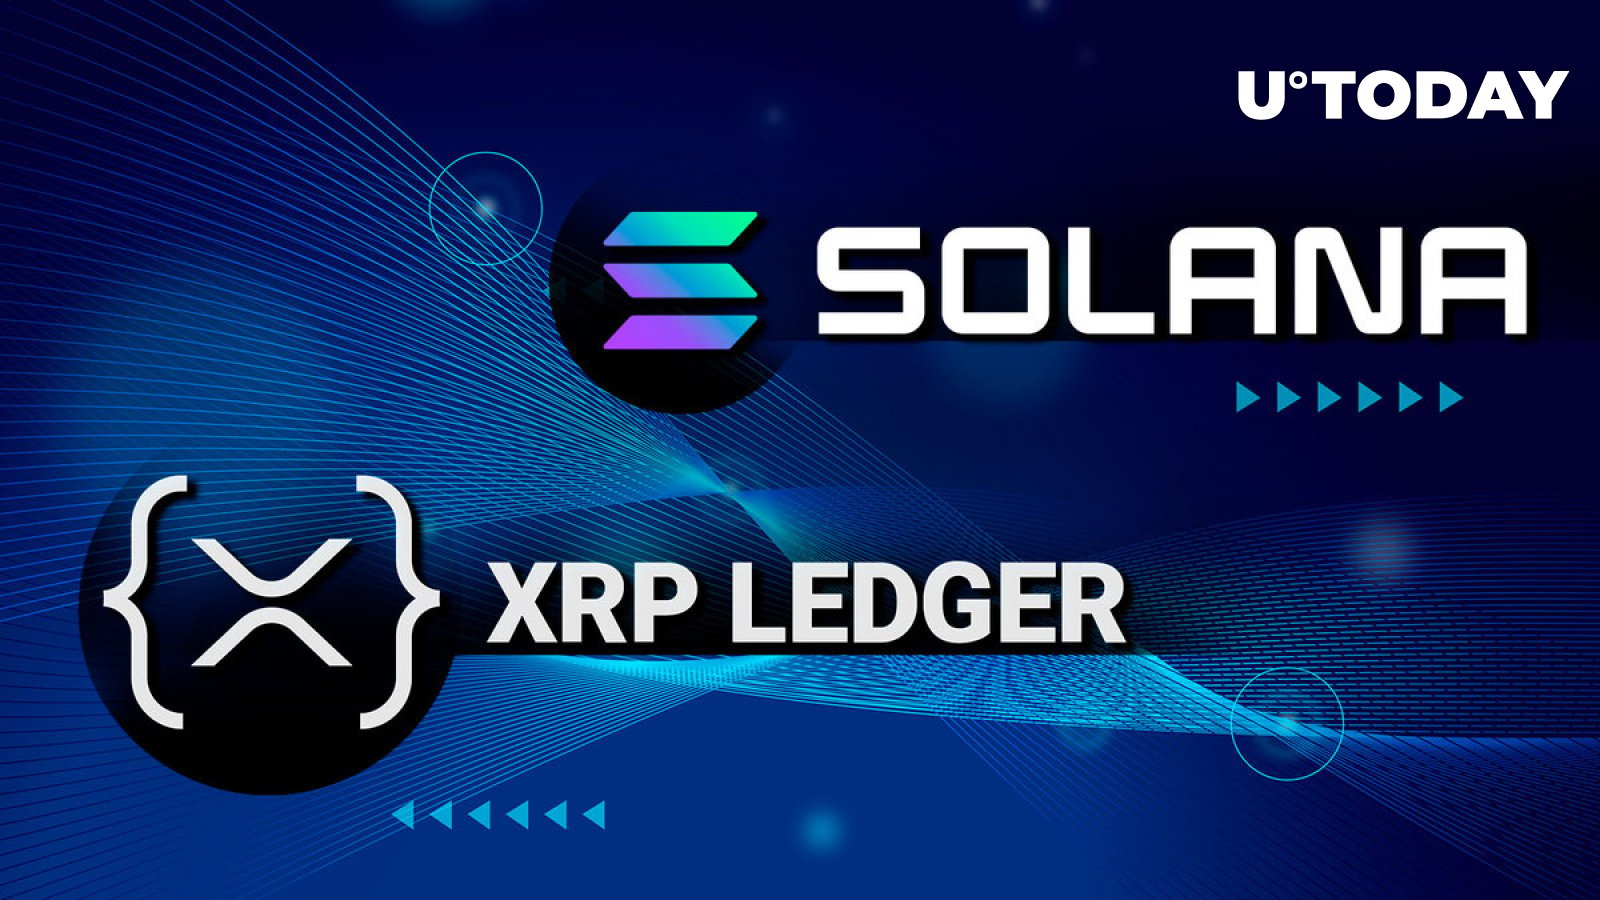 首席XRPL NFT创建者解释为什么Solana比XRP Ledger更好